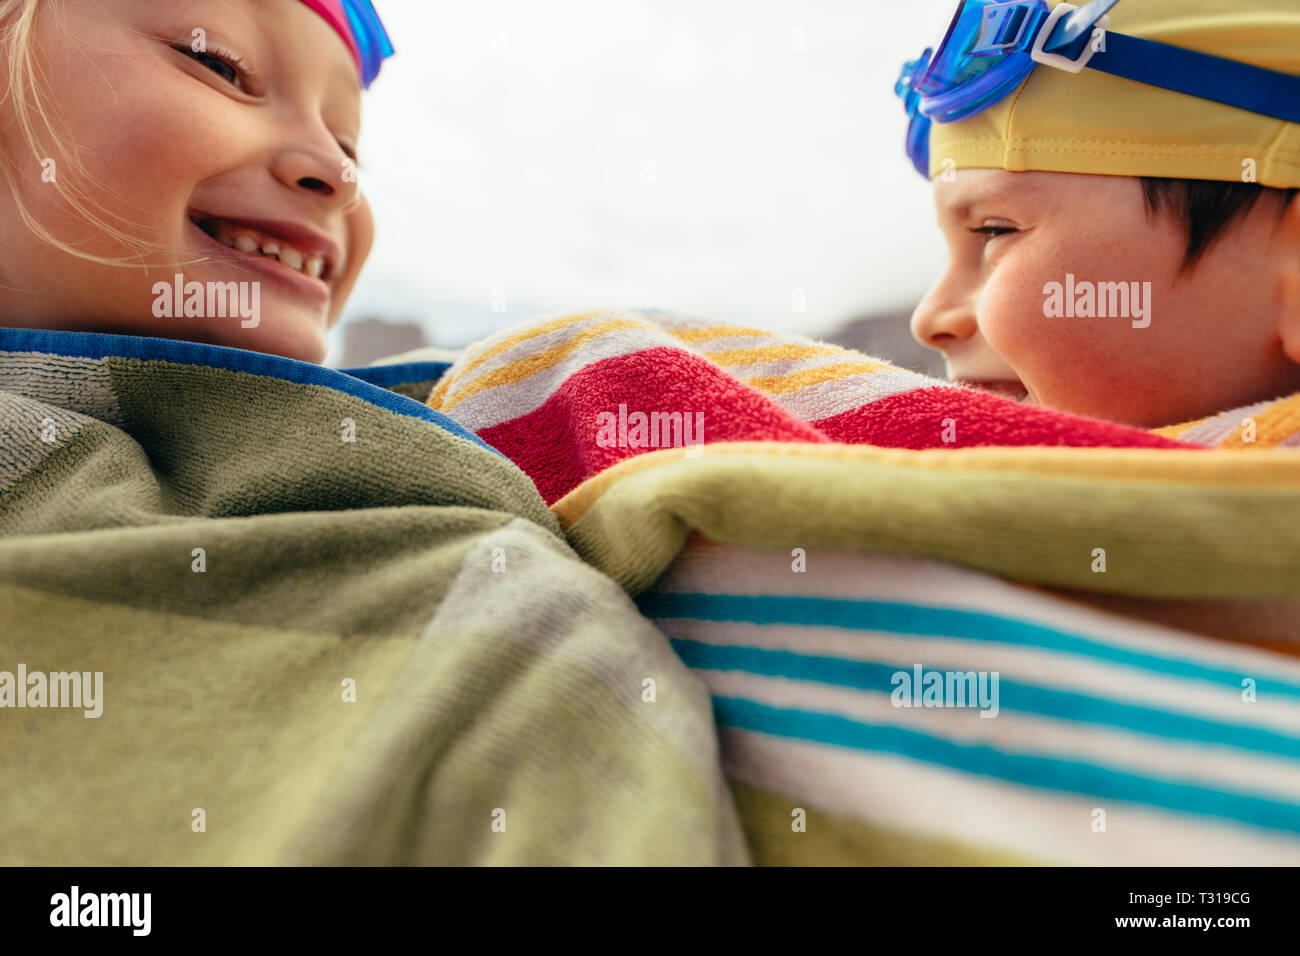 Garçon et fille enveloppée dans une serviette après la formation. Deux enfants s'amusant après la baignade. Banque D'Images